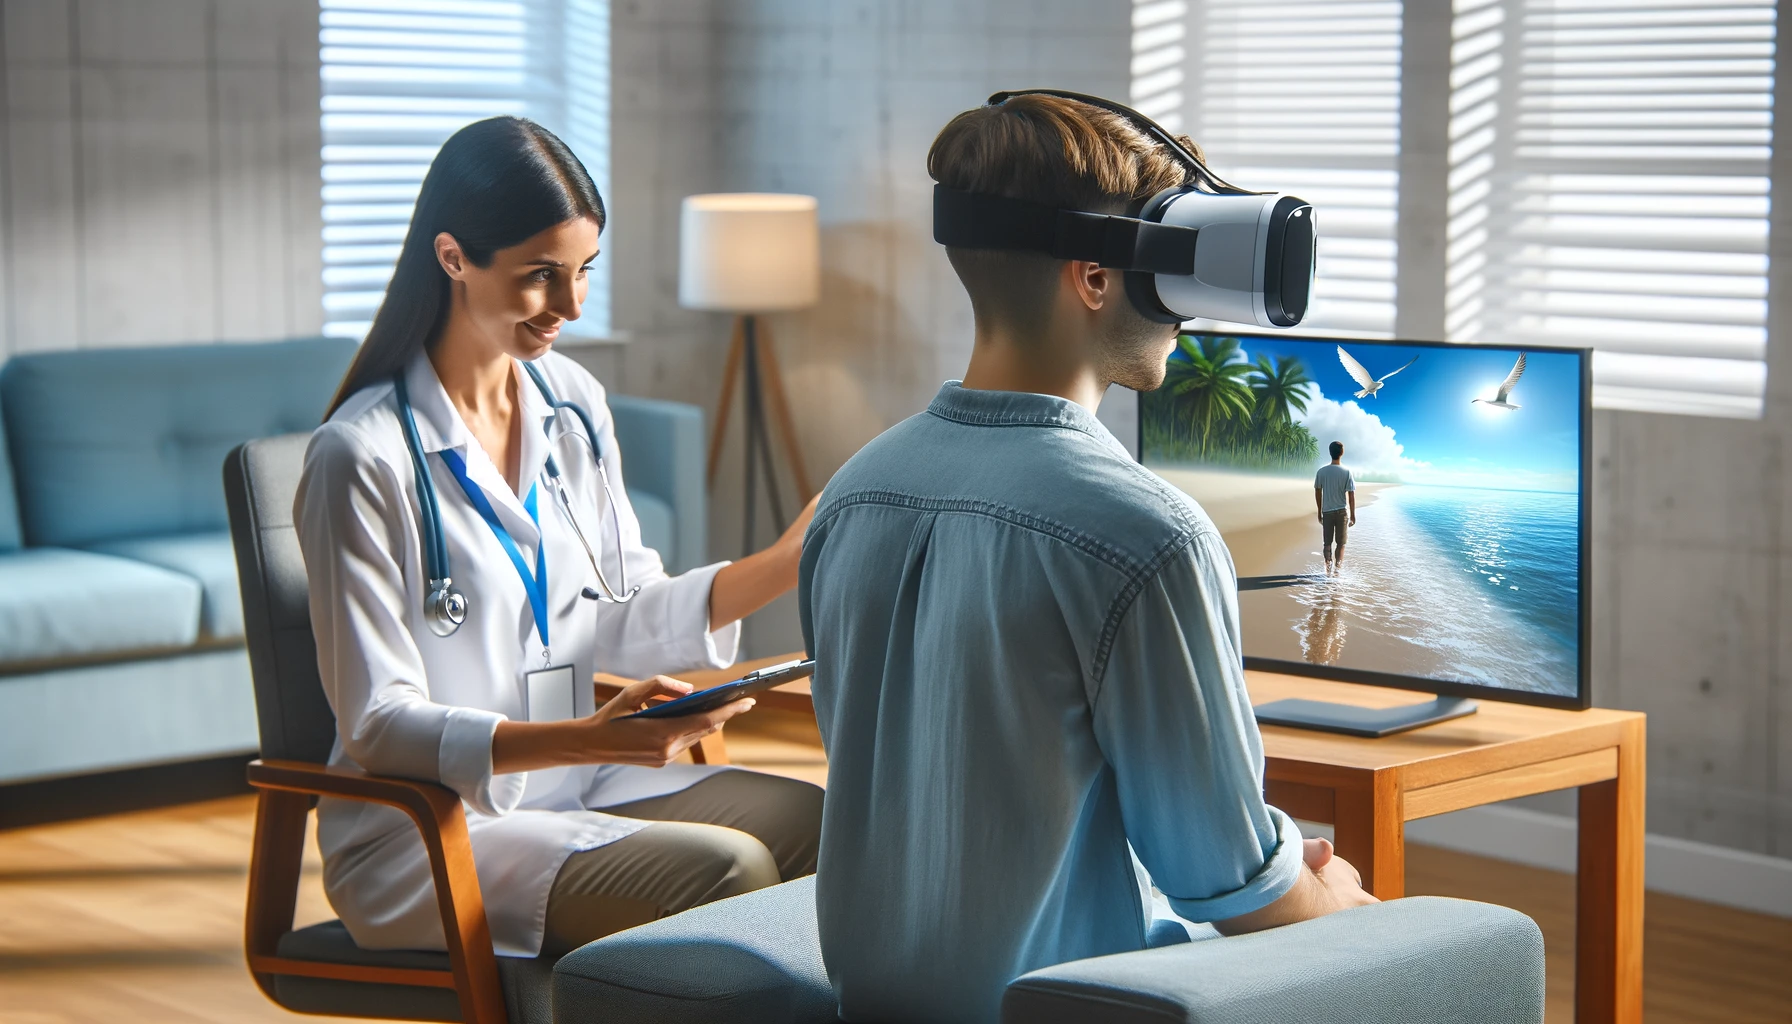 Un terapeuta utilizando realidad virtual para realizar una sesión de tratamiento de ansiedad con un paciente. La imagen presenta al terapeuta en una oficina tranquila, asistiendo a un paciente que usa un visor VR en un entorno pacífico virtual.